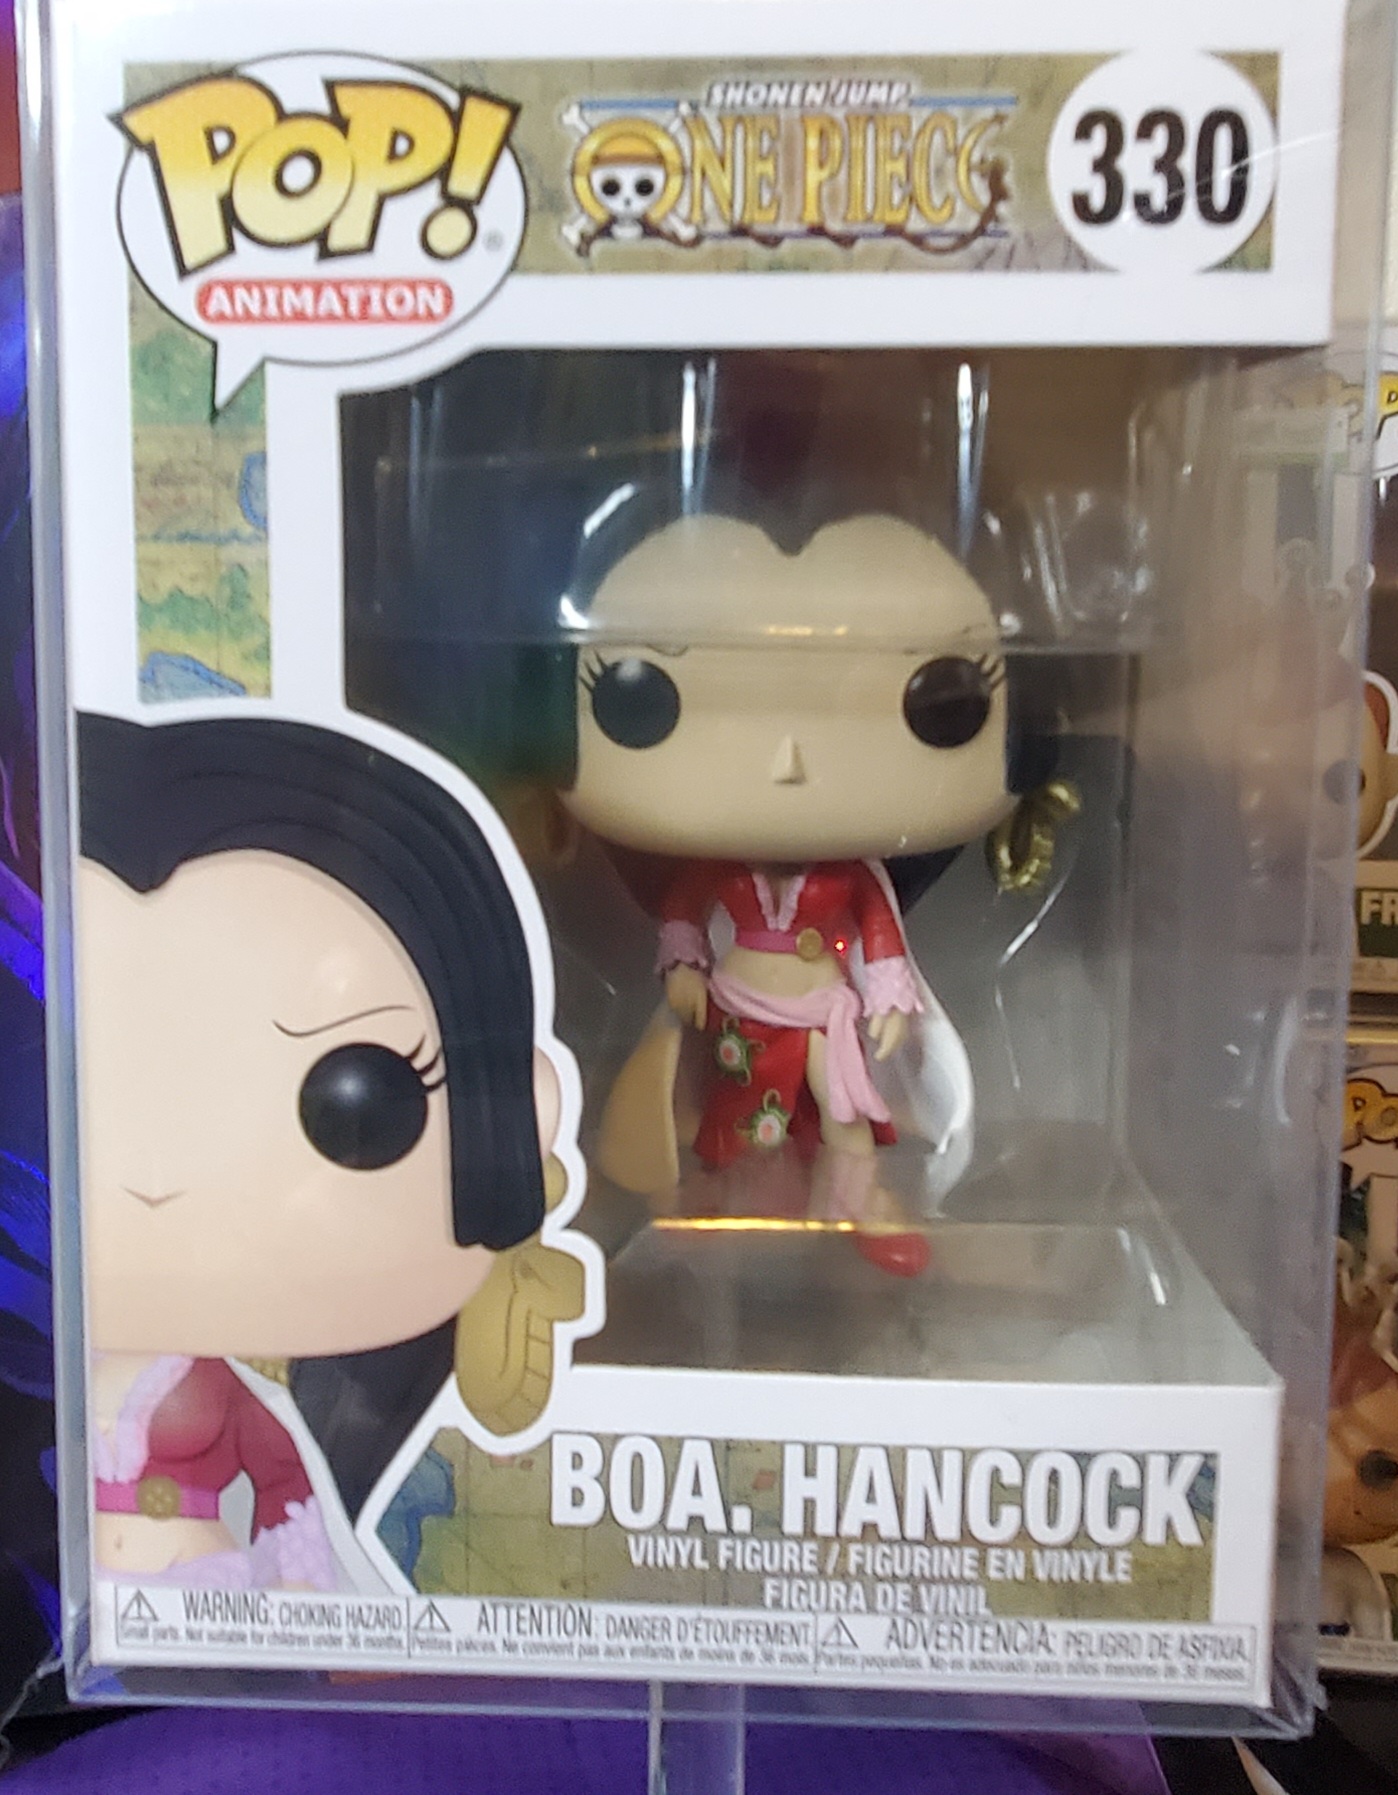 Boa. Hancock One Piece Funko POP!